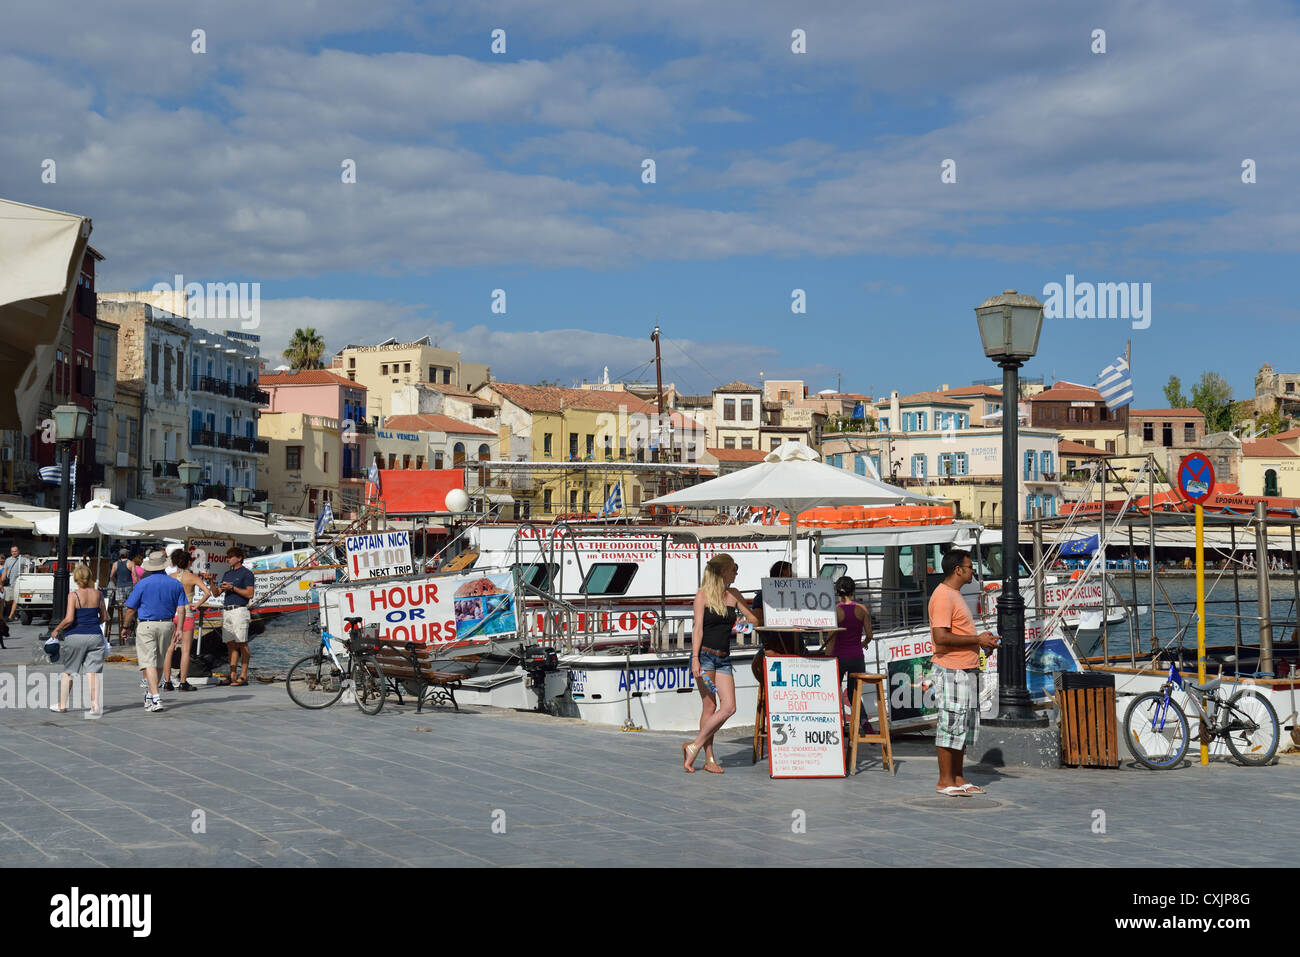 Seafront promenade, Chania, Chania Prefecture, Crete, Greece Stock Photo